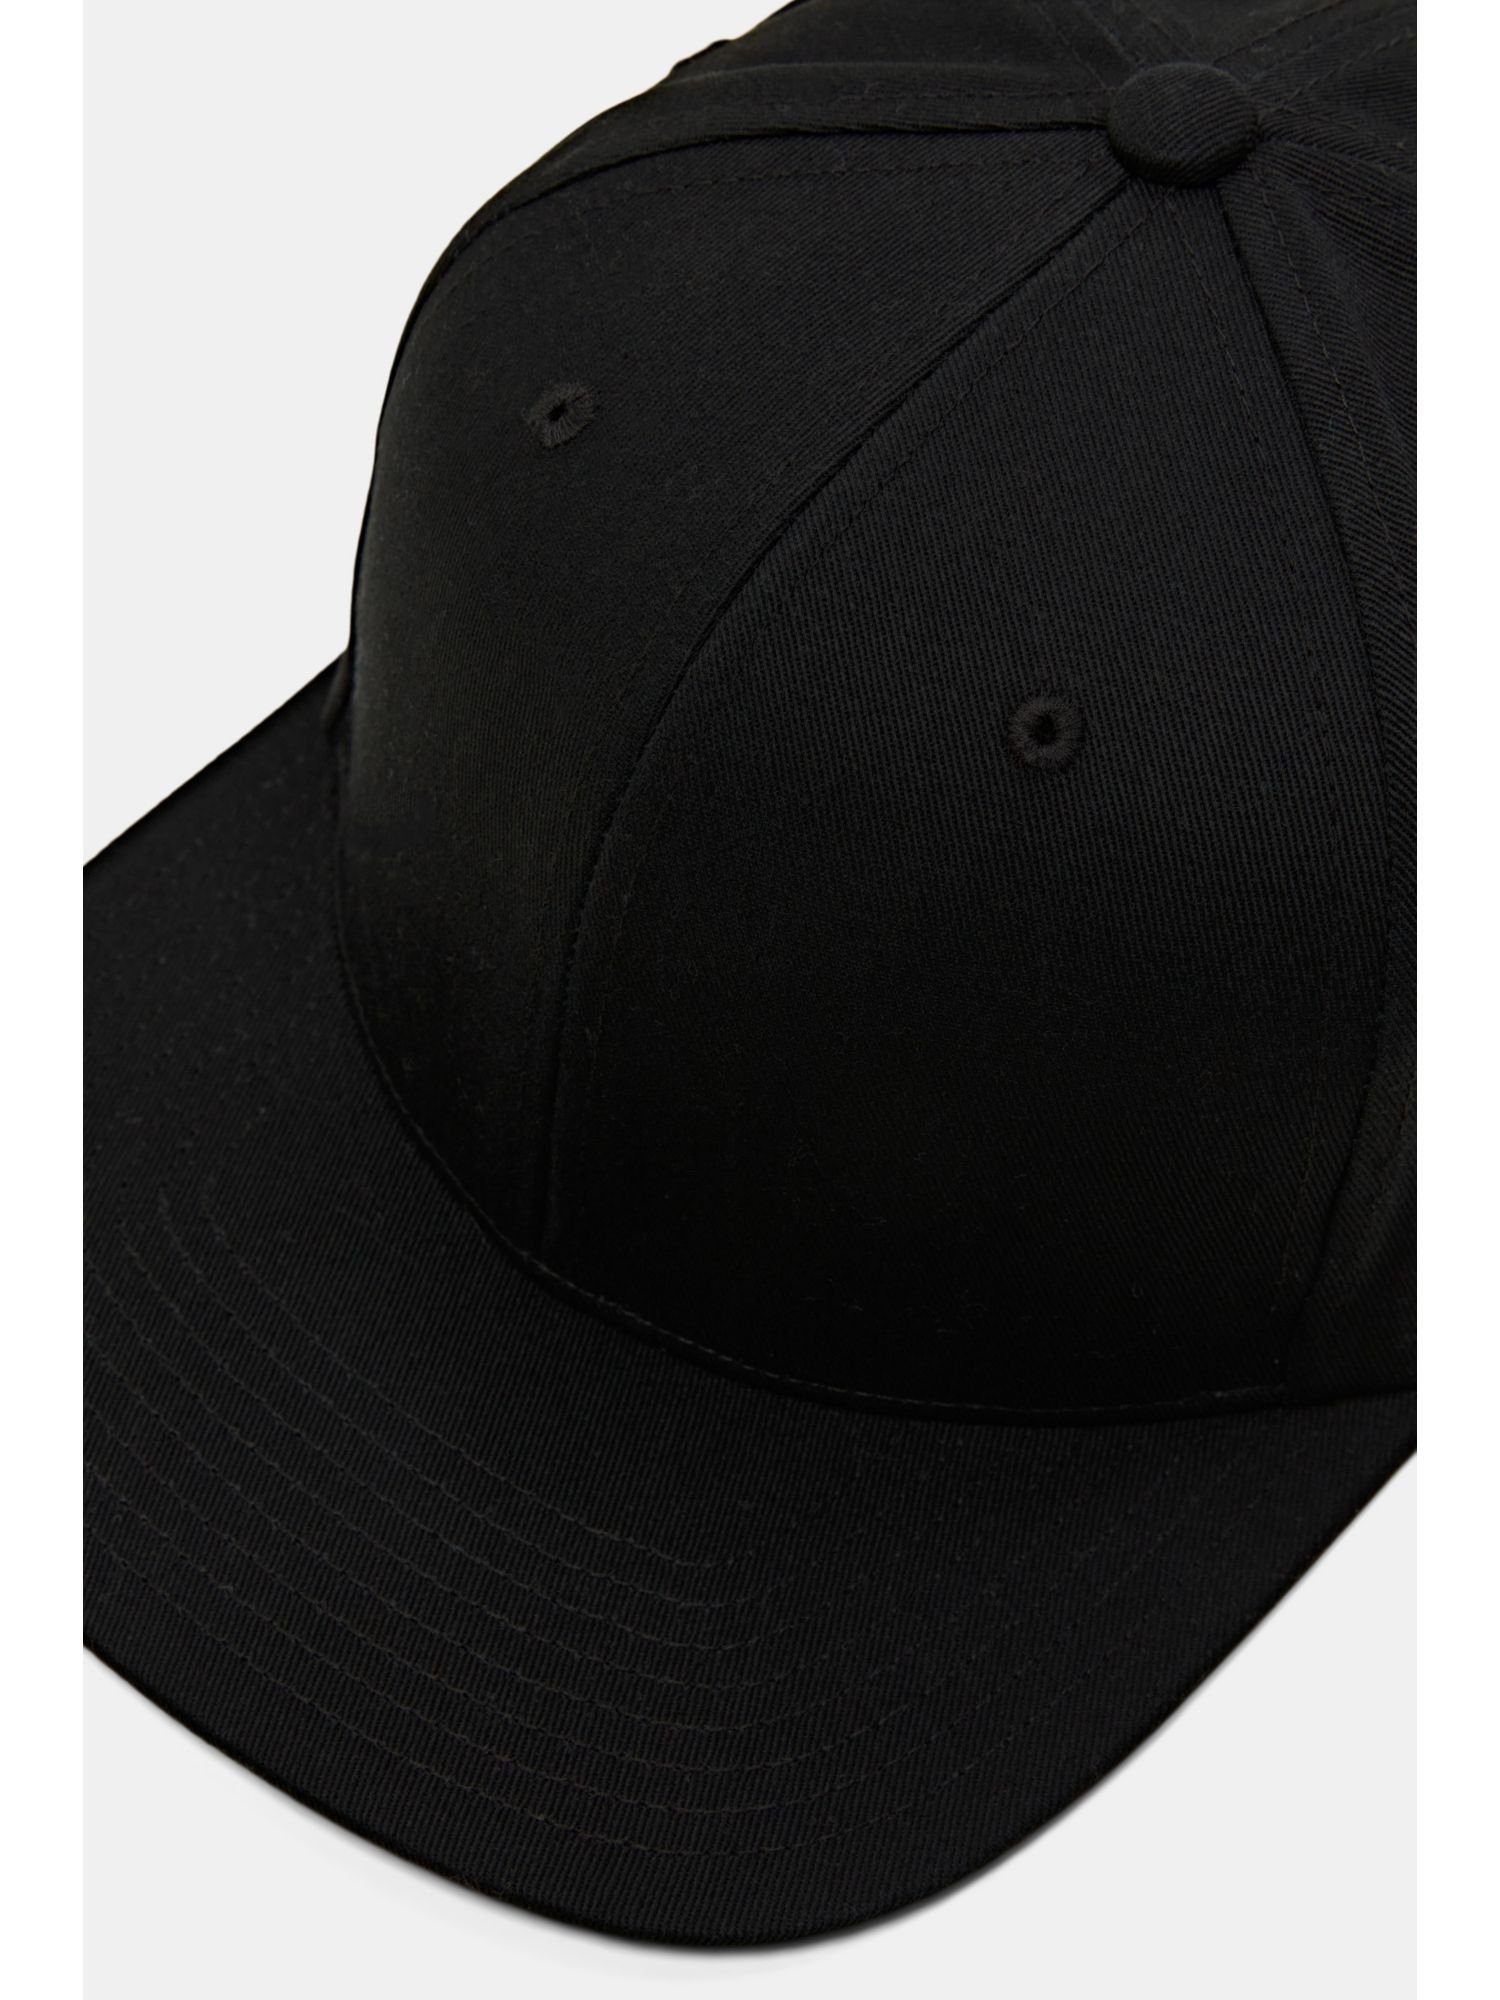 NEW Baseball Krempe Cap BLACK Esprit mit aus Baumwolle Schiebermütze